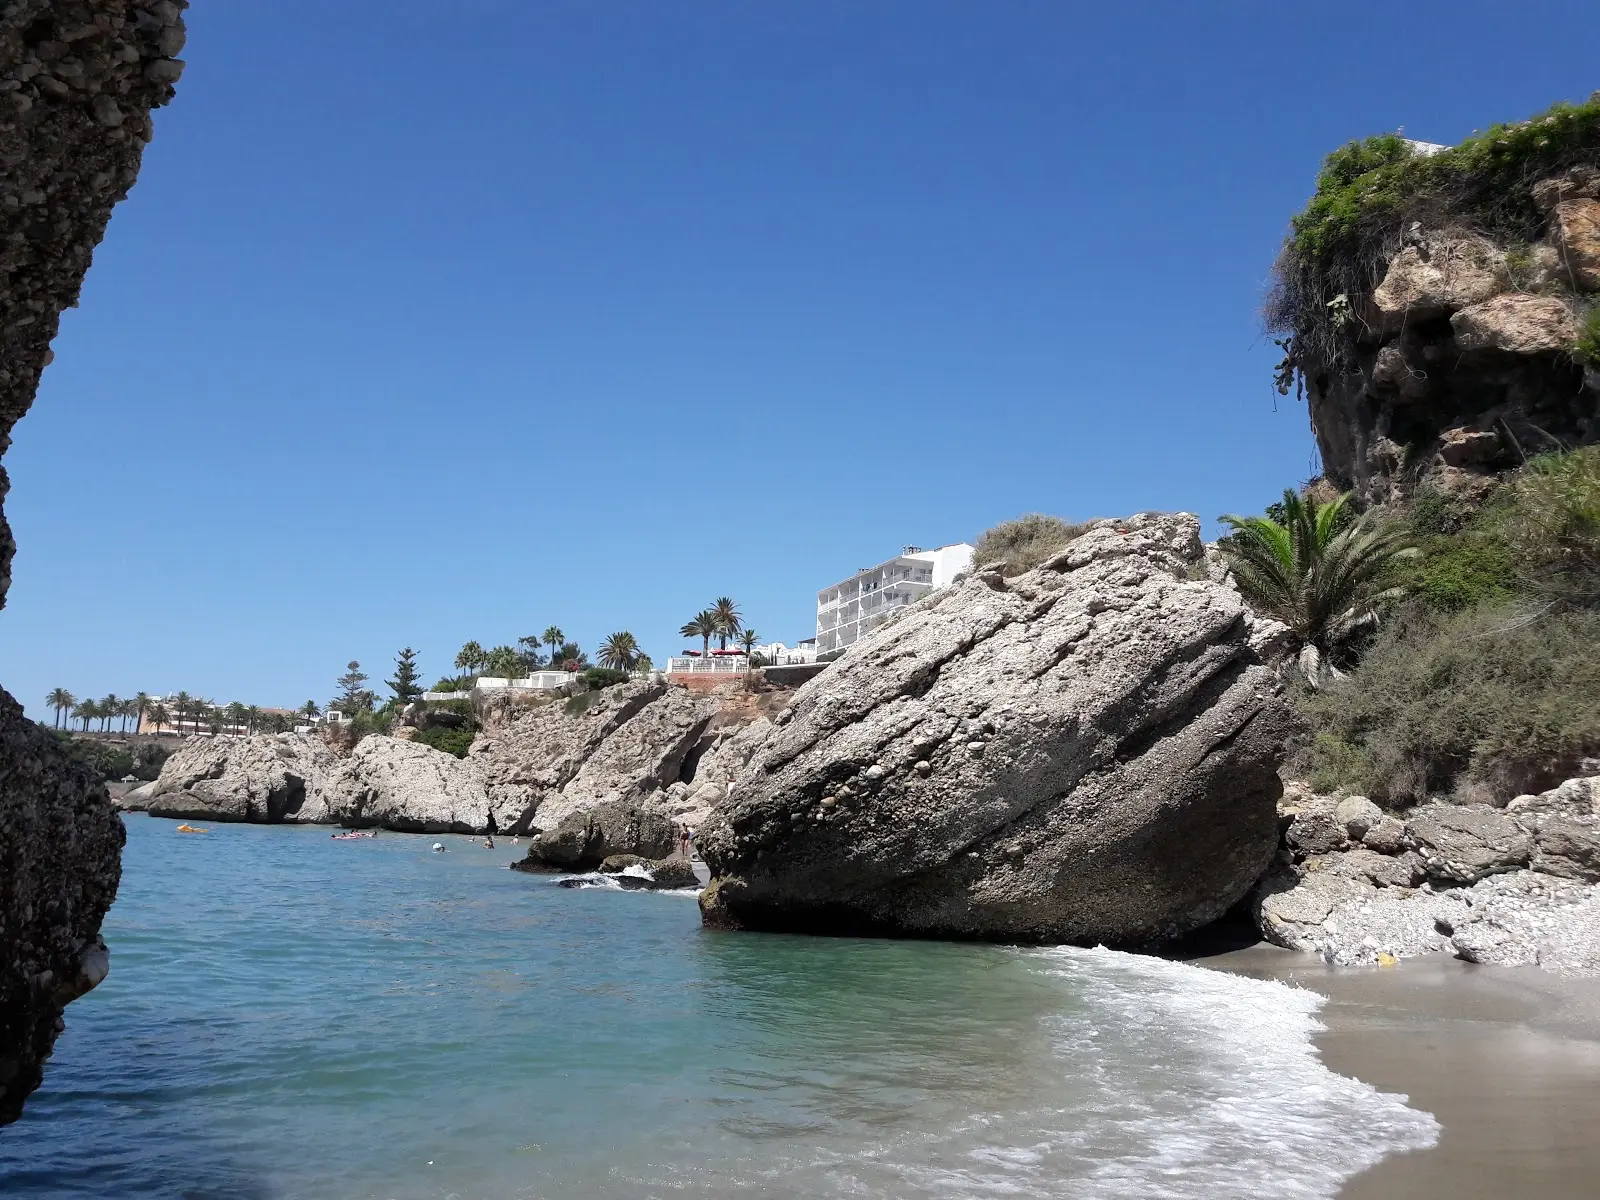 Ambiente sumergido en naturaleza en la Playa el Chorrillo